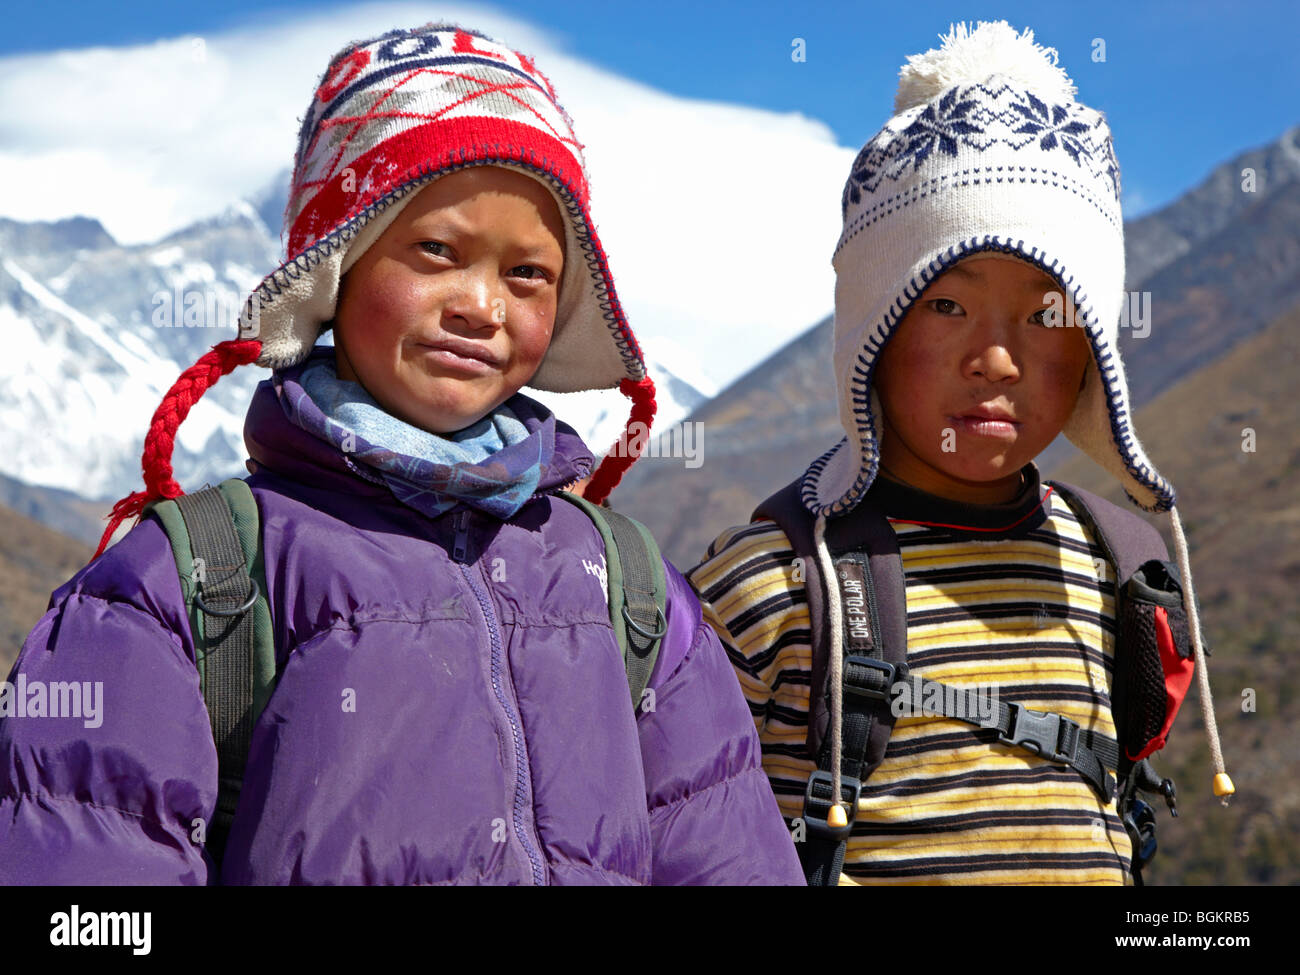 Jungen Sherpa-Boys In der Everest Region Himalaya Nepal Asien Stockfoto